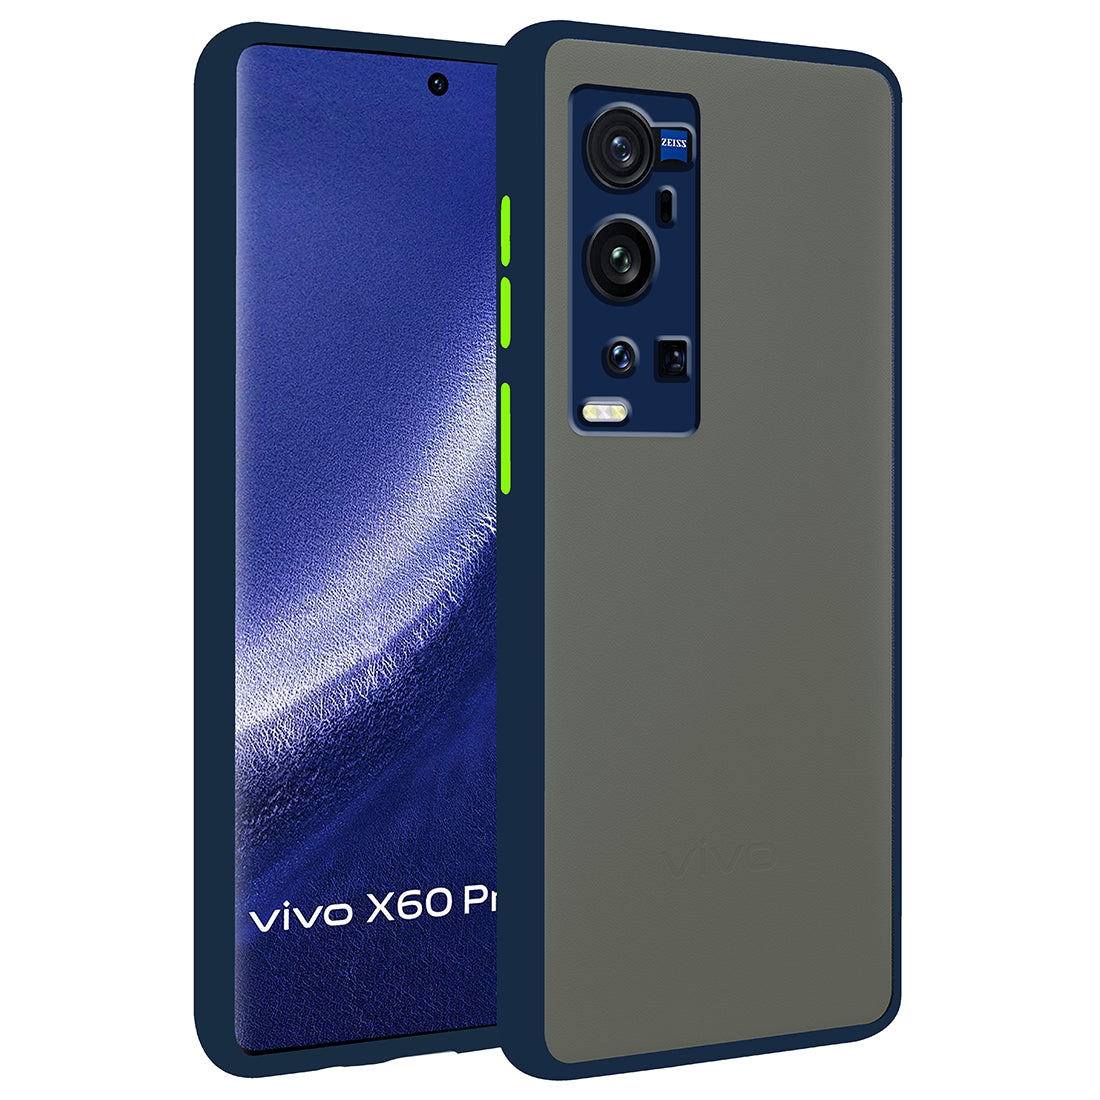 Vivo X60 Pro Plus